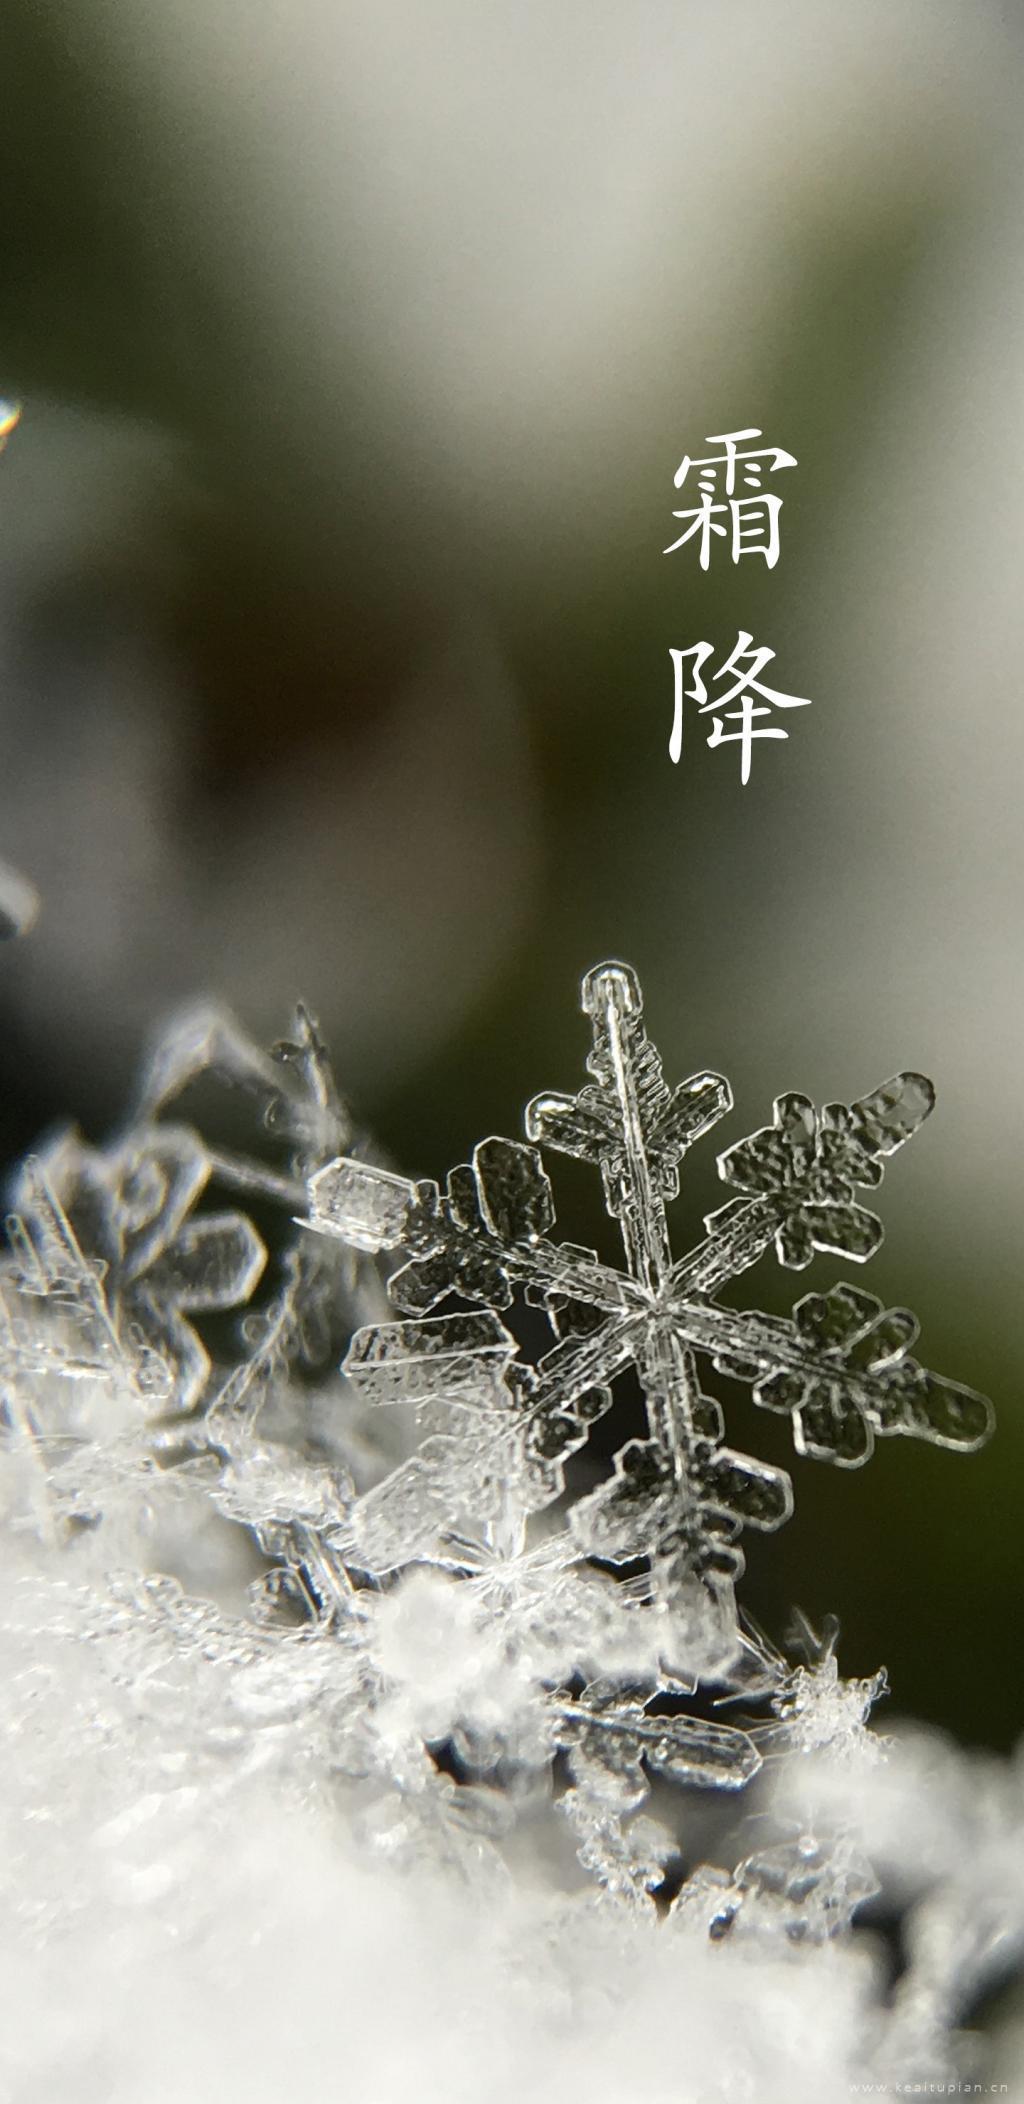 雪花形状的霜花唯美高清霜降图片